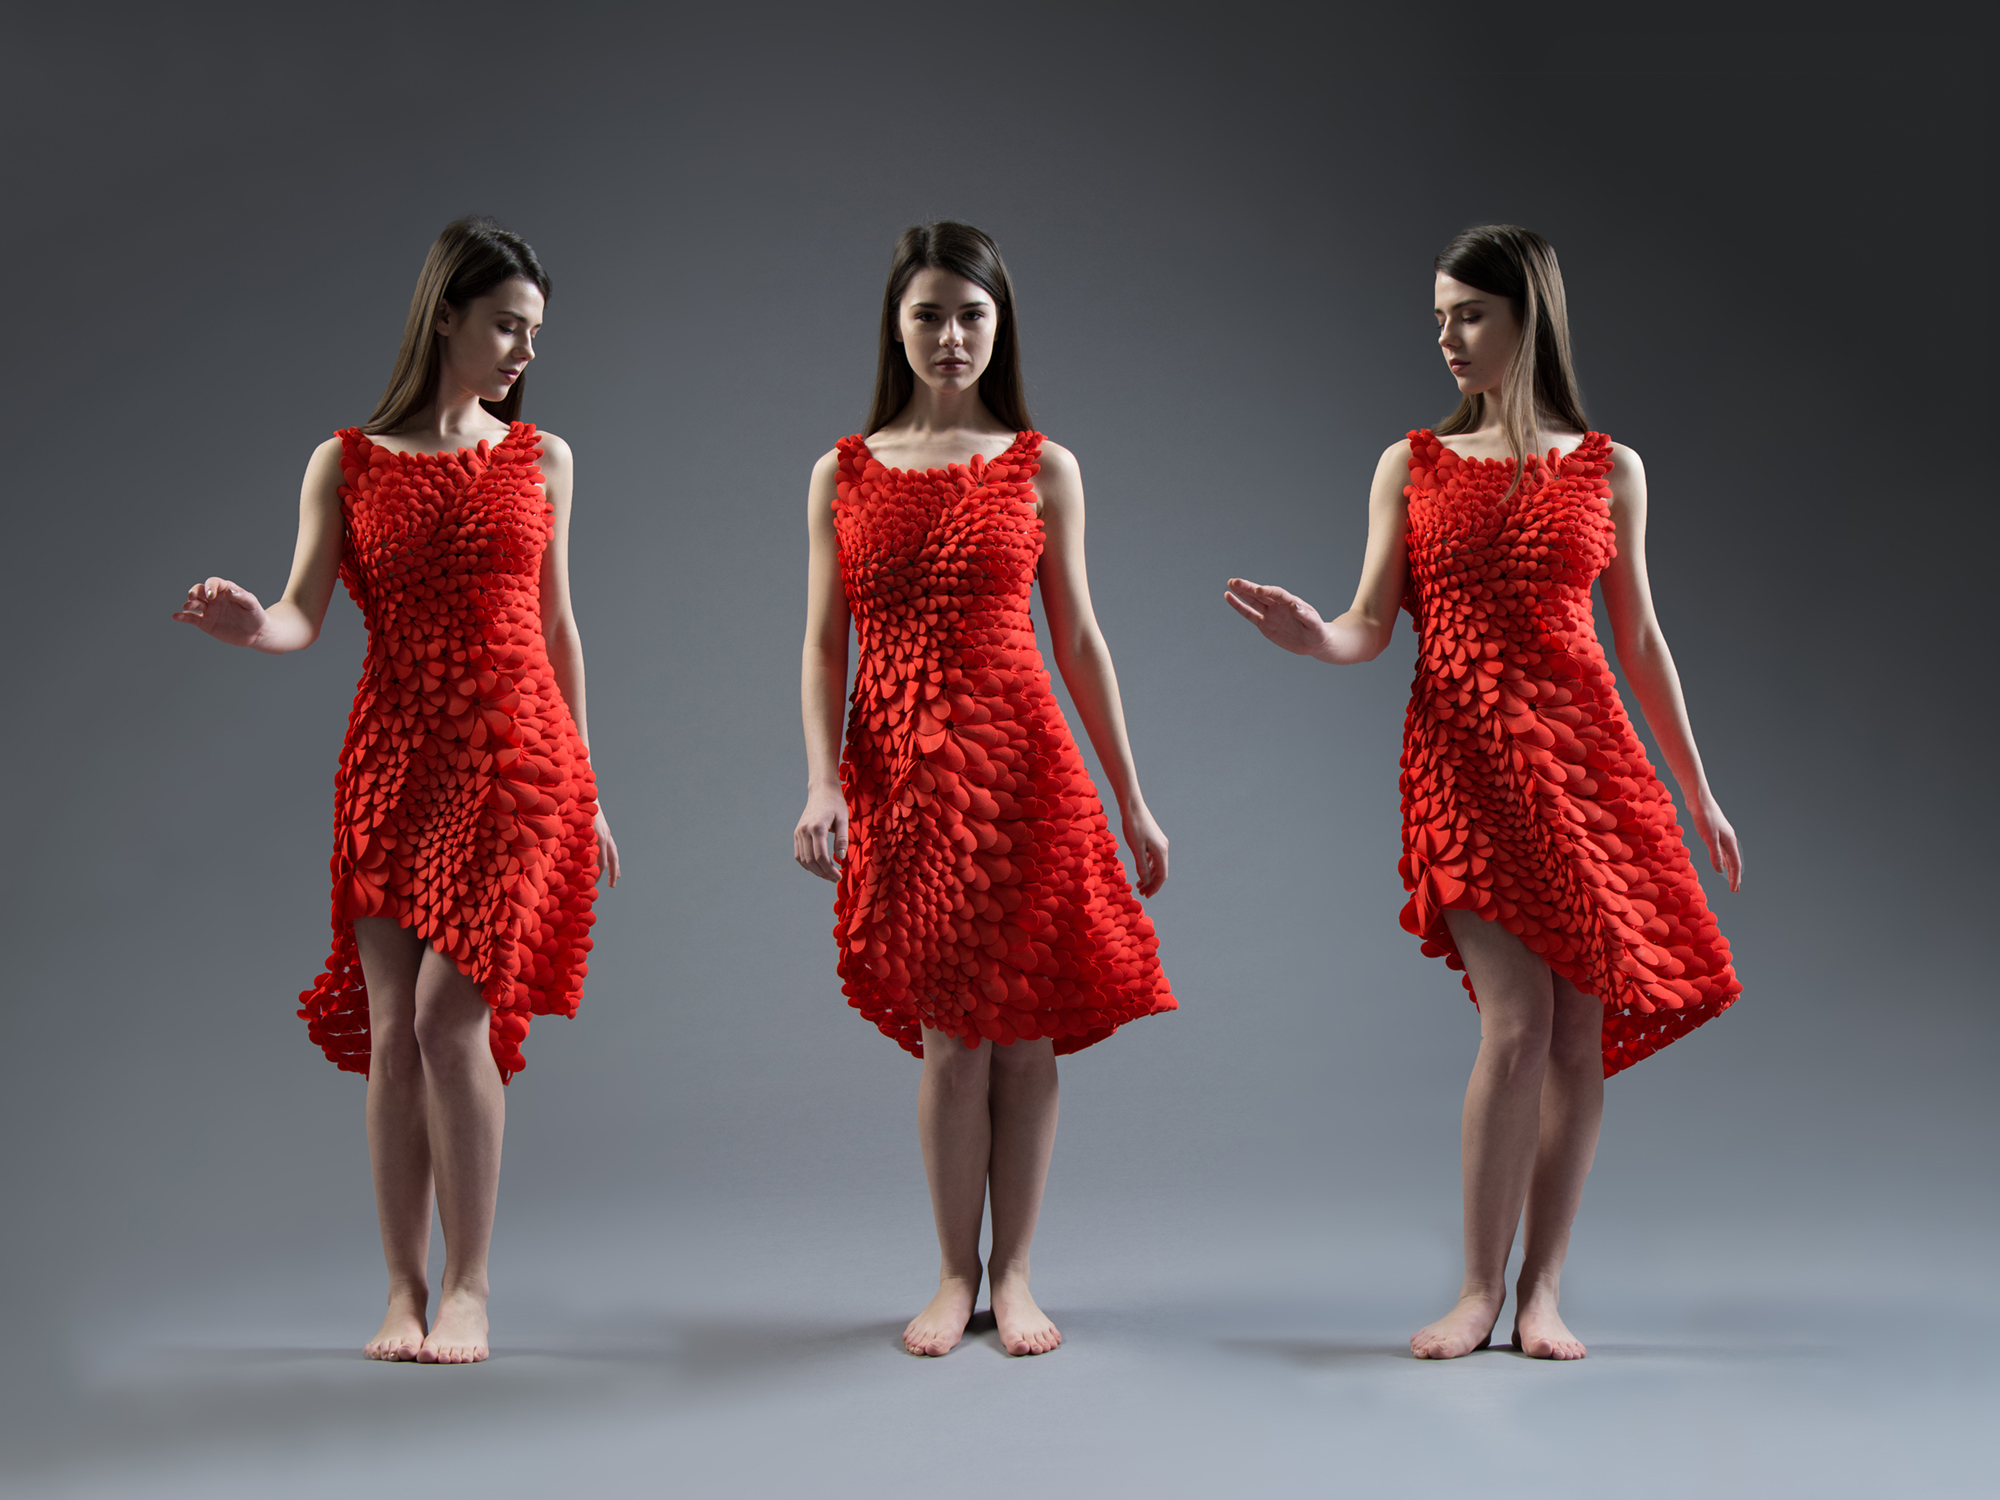 Petals-Dress-triptych_2000px.jpg